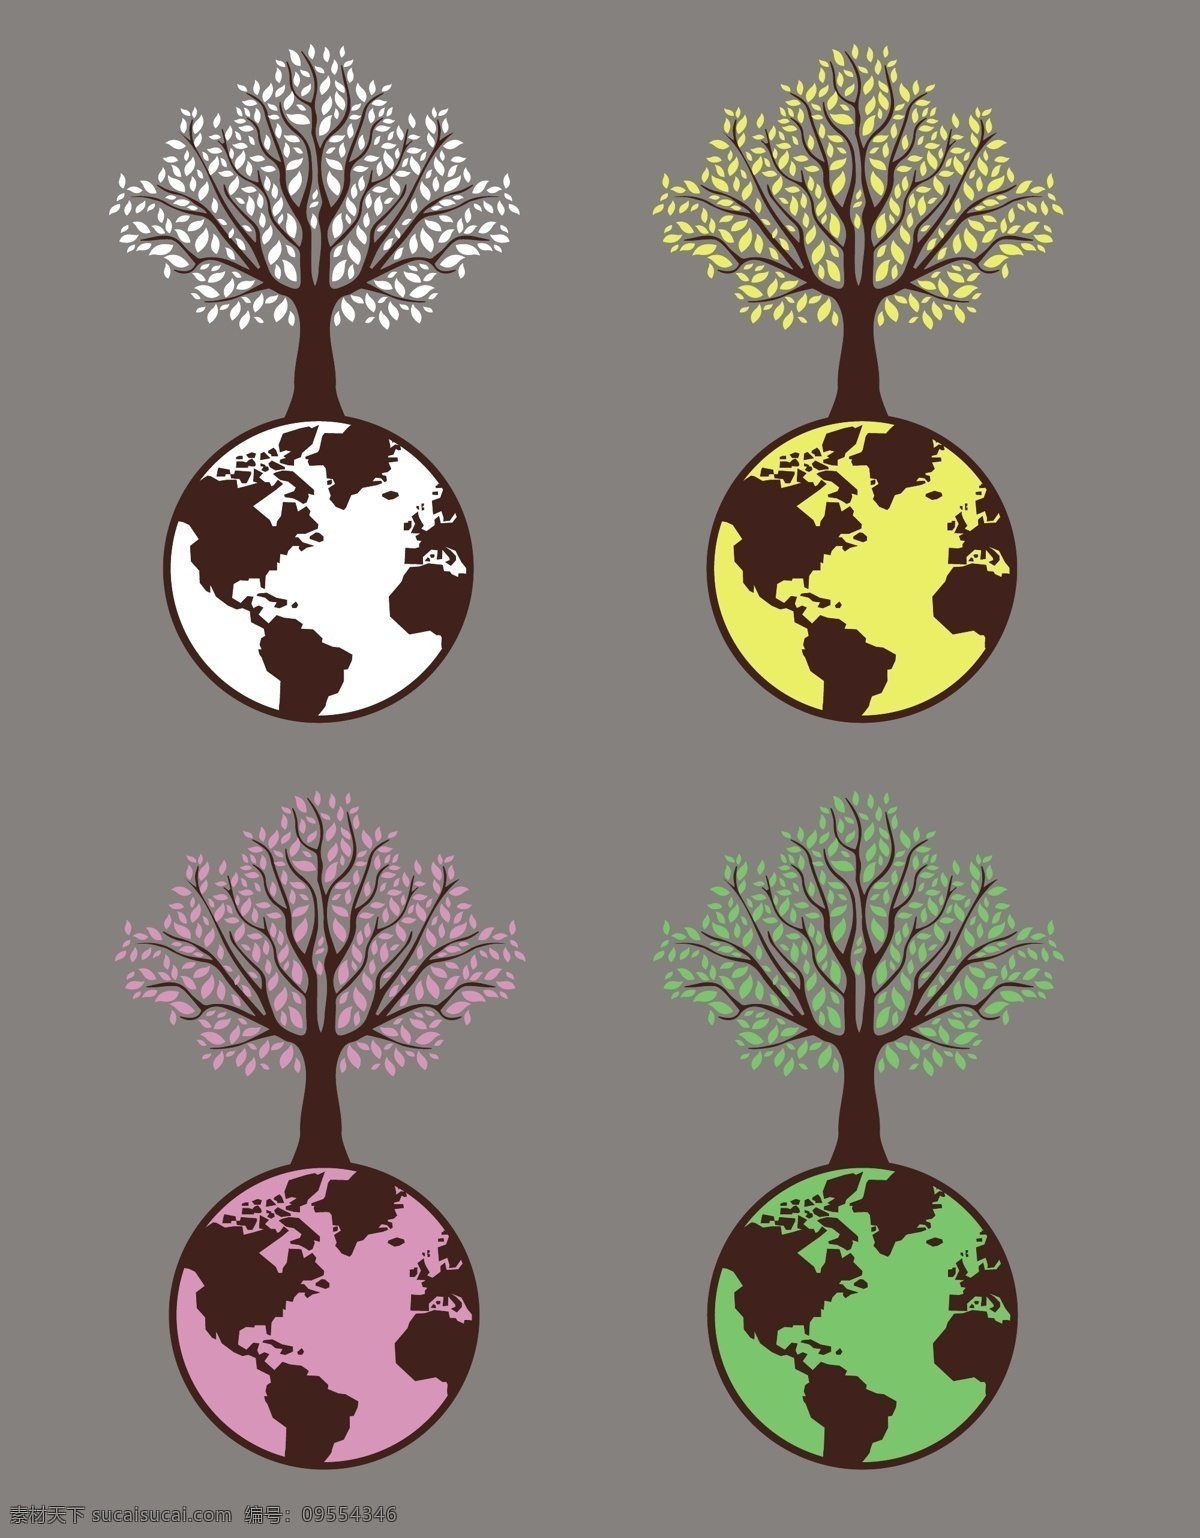 创意 地球 环保 图标 环保图标 创意图标 树木 爱护环境 矢量素材